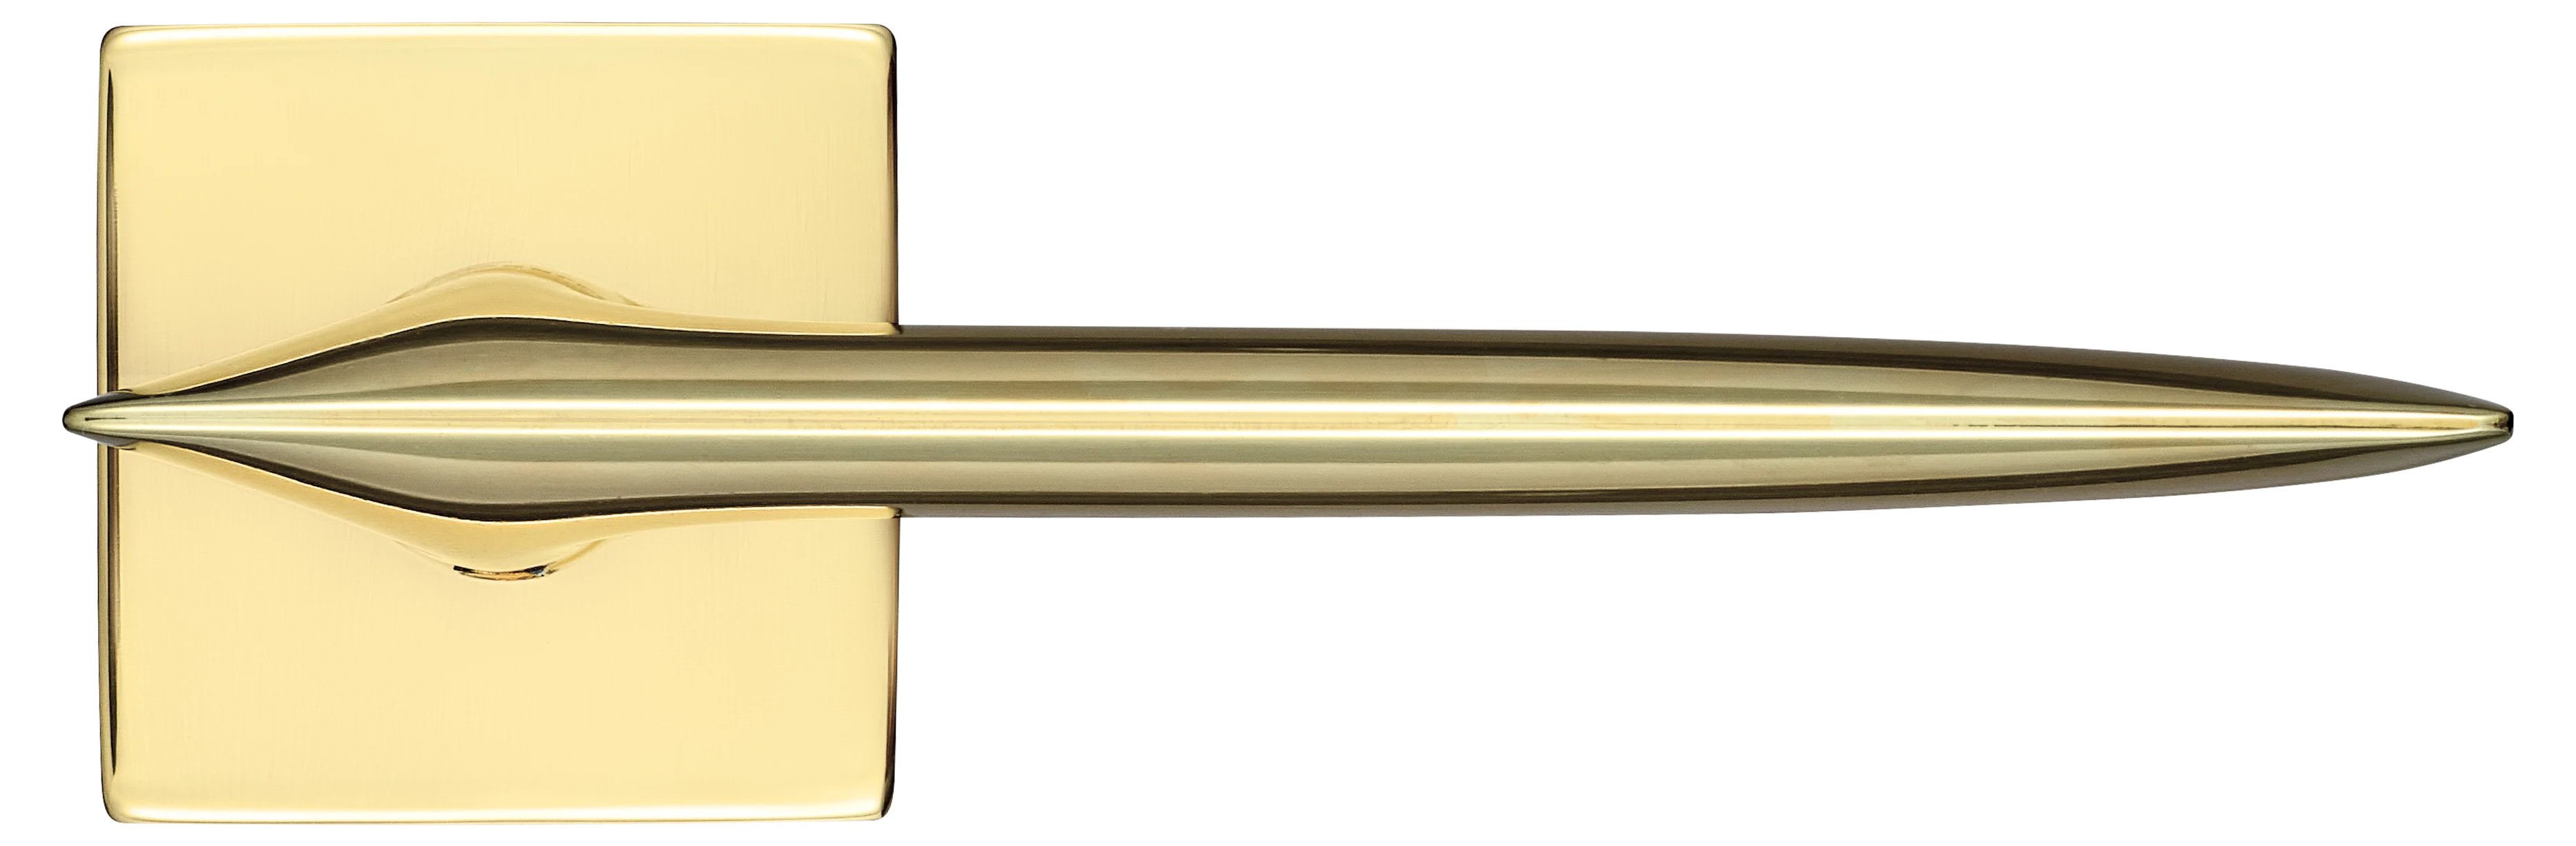 GALACTIC S5 OTL, ручка дверная, цвет -  золото фото купить в Набережных Челнах